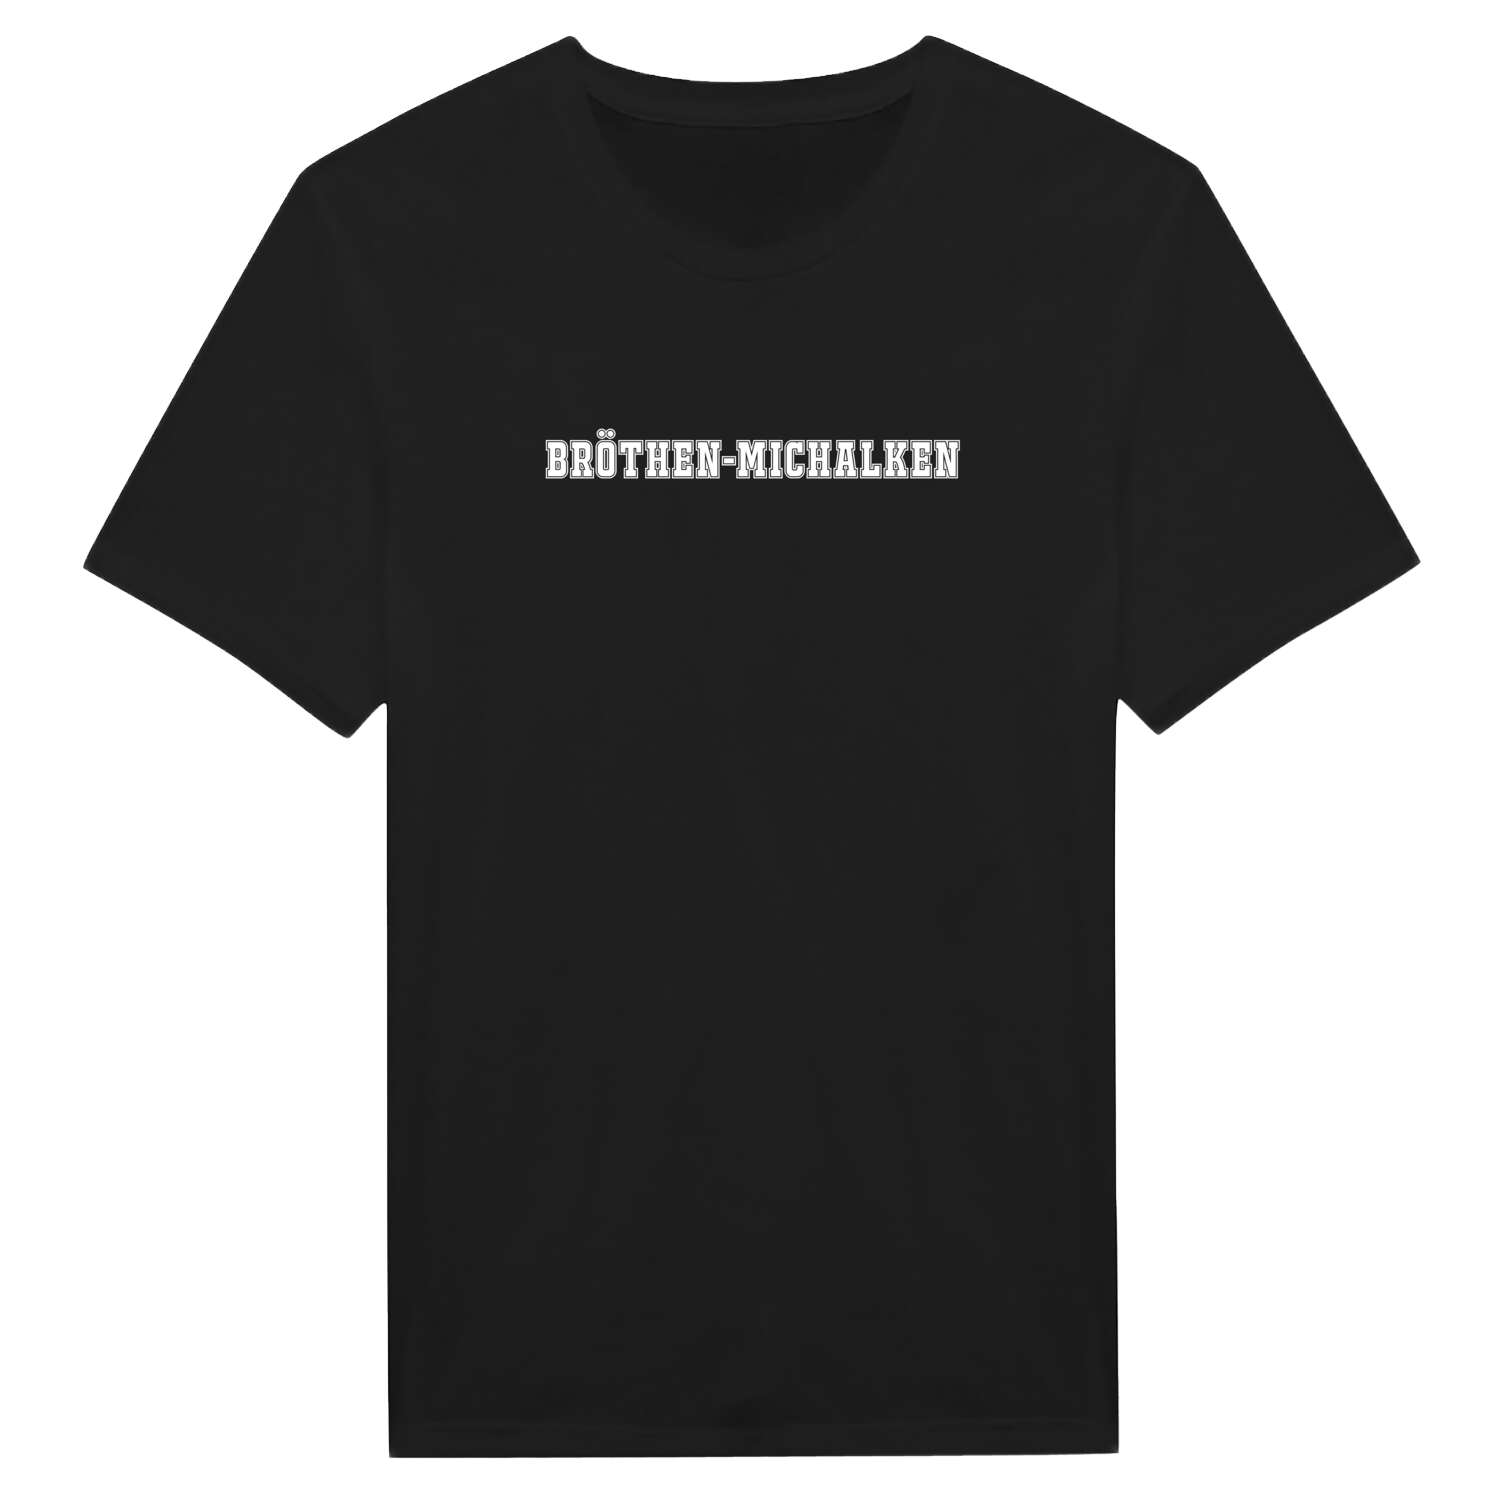 Bröthen-Michalken T-Shirt »Classic«